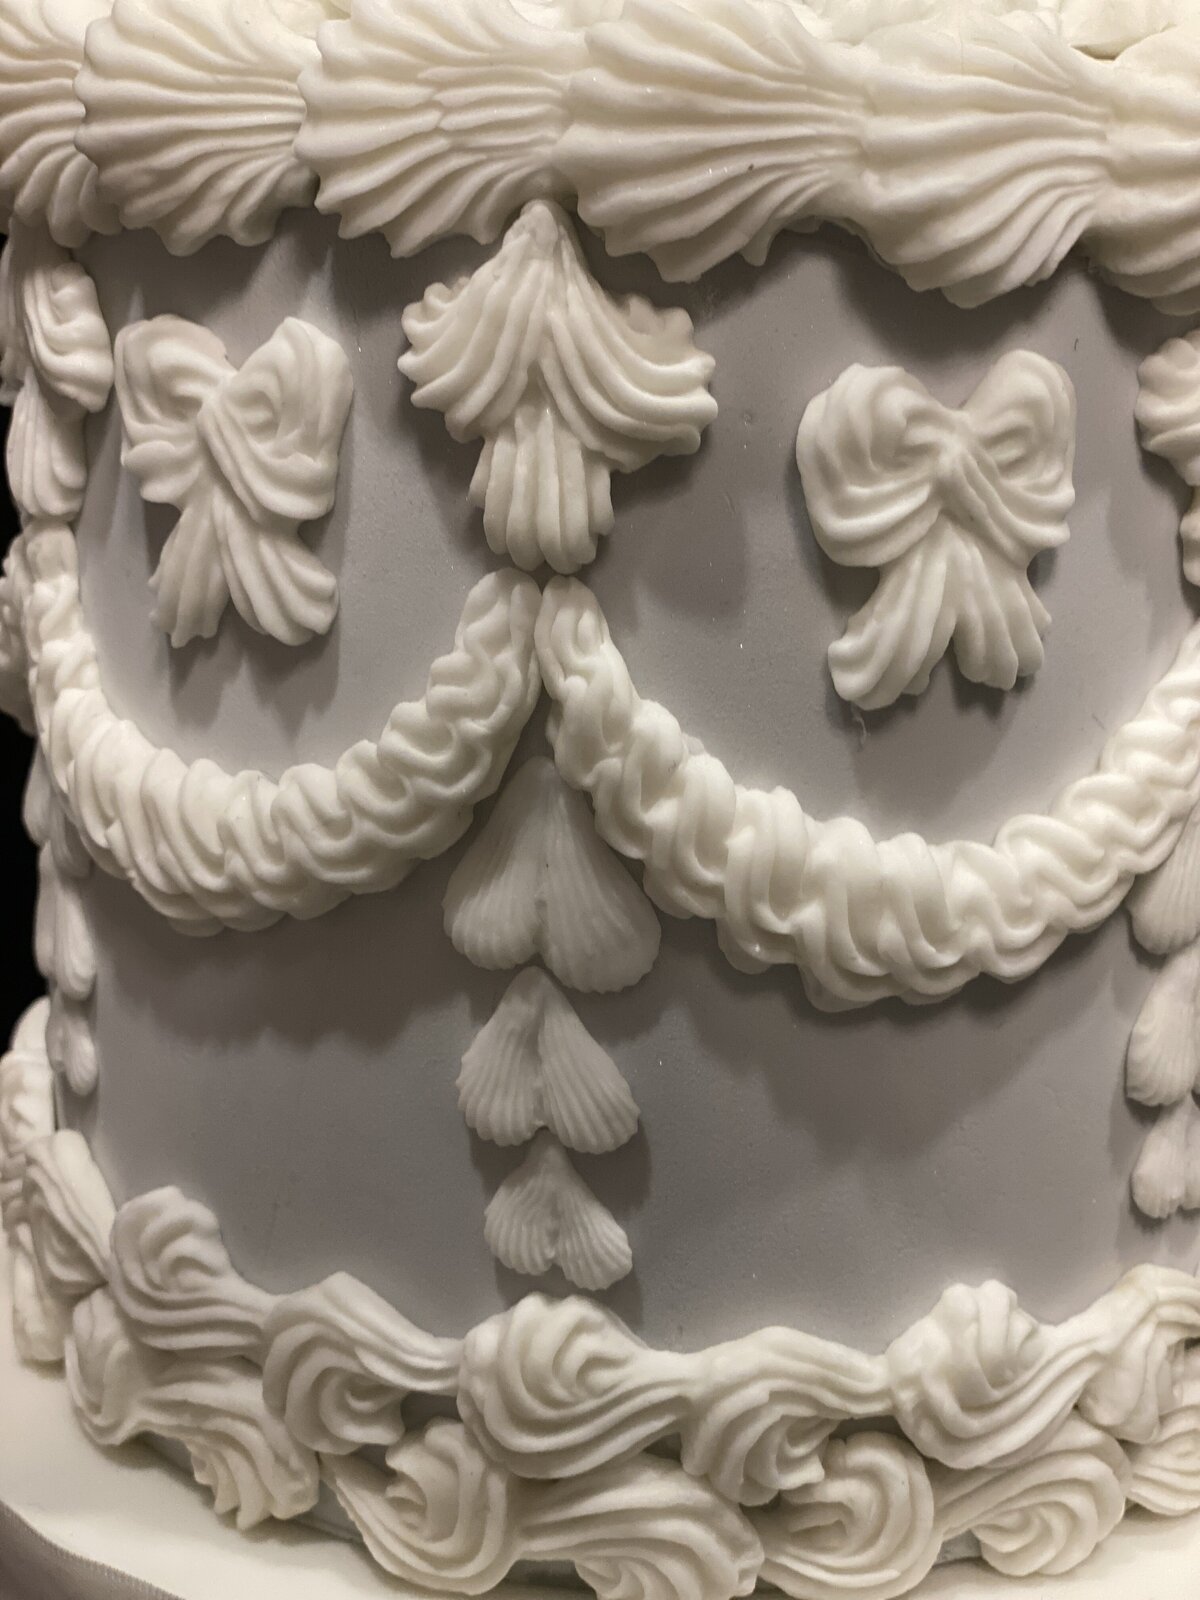 Grey and white lambeth birthday cake